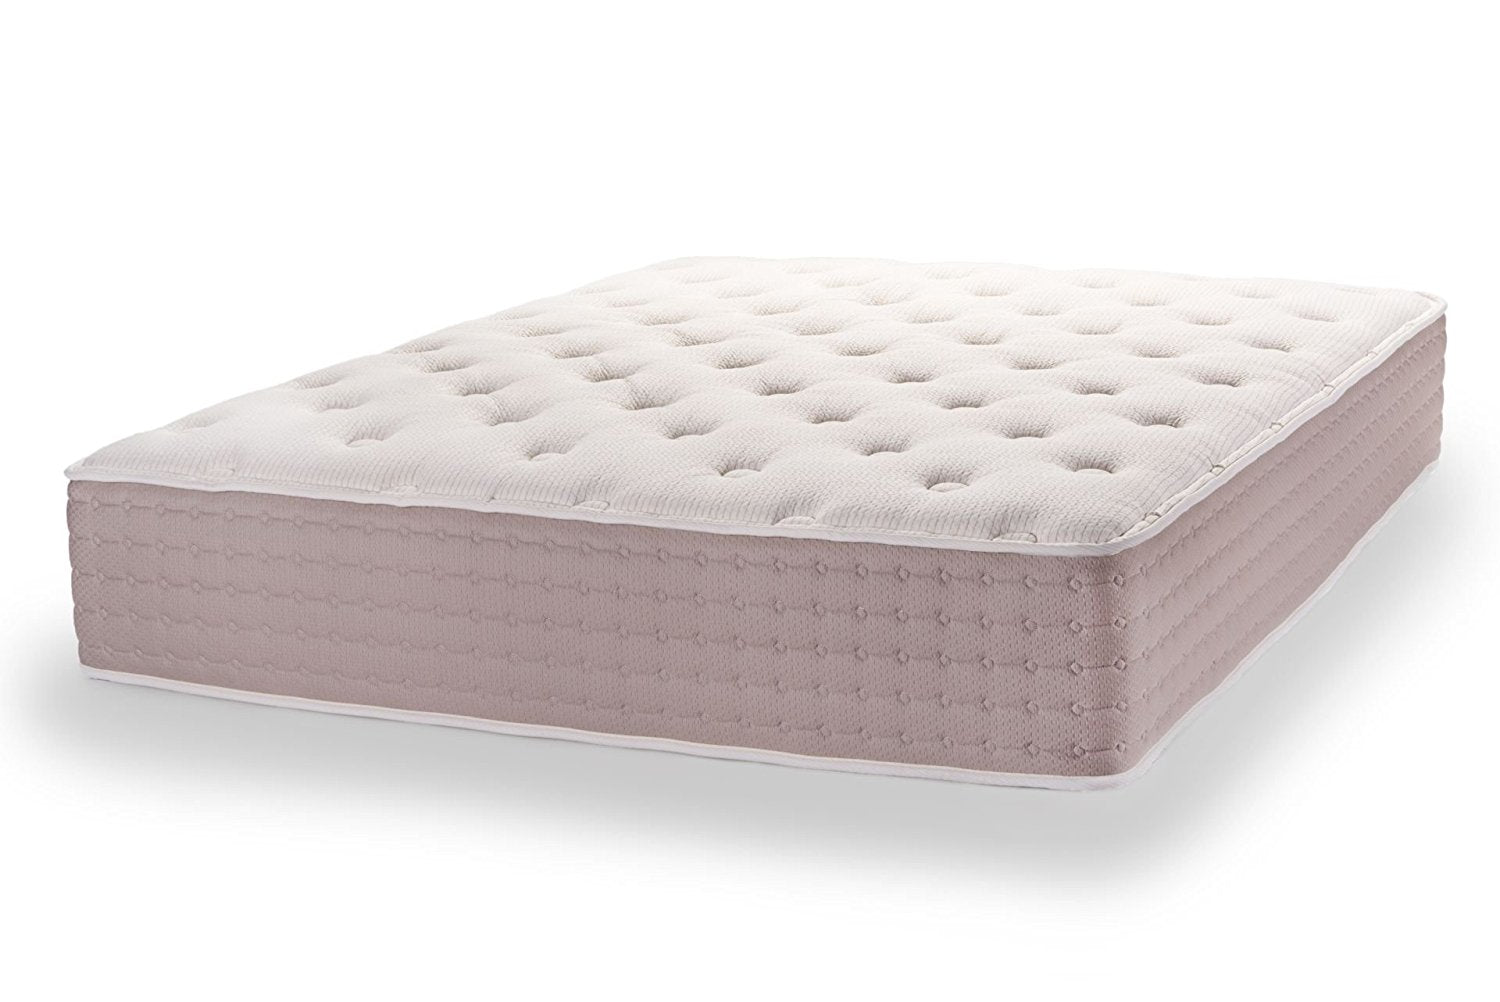 dunlop latex mattress allergy